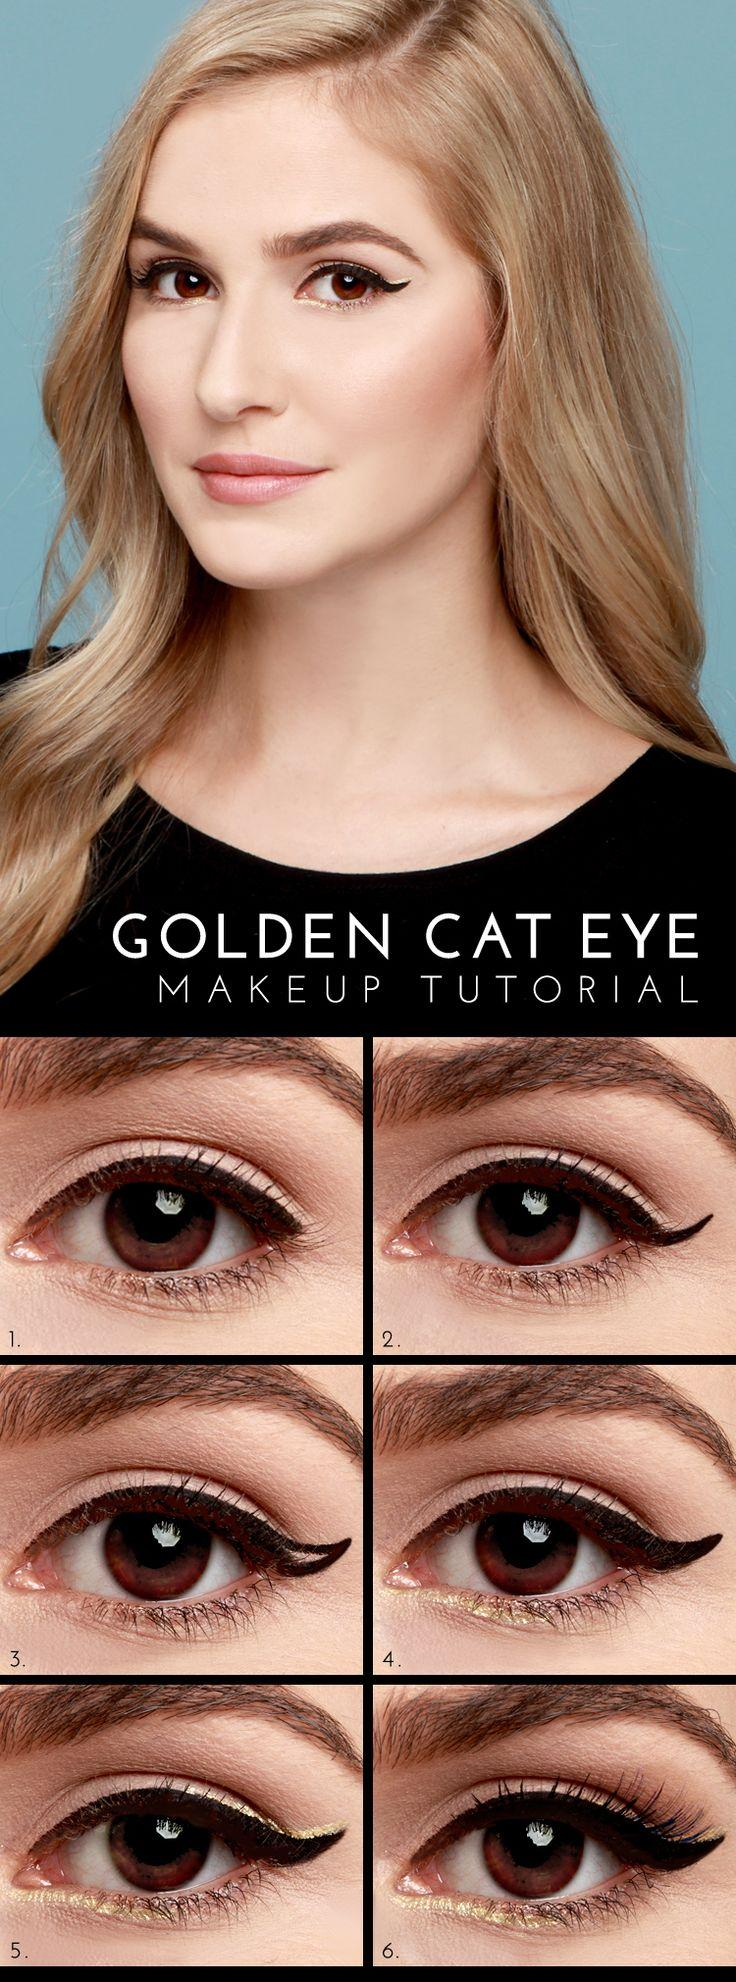 Wedding Makeup Cat Eye Makeup Lulus How To Golden Cat Eye Tutorial 2368104 Weddbook